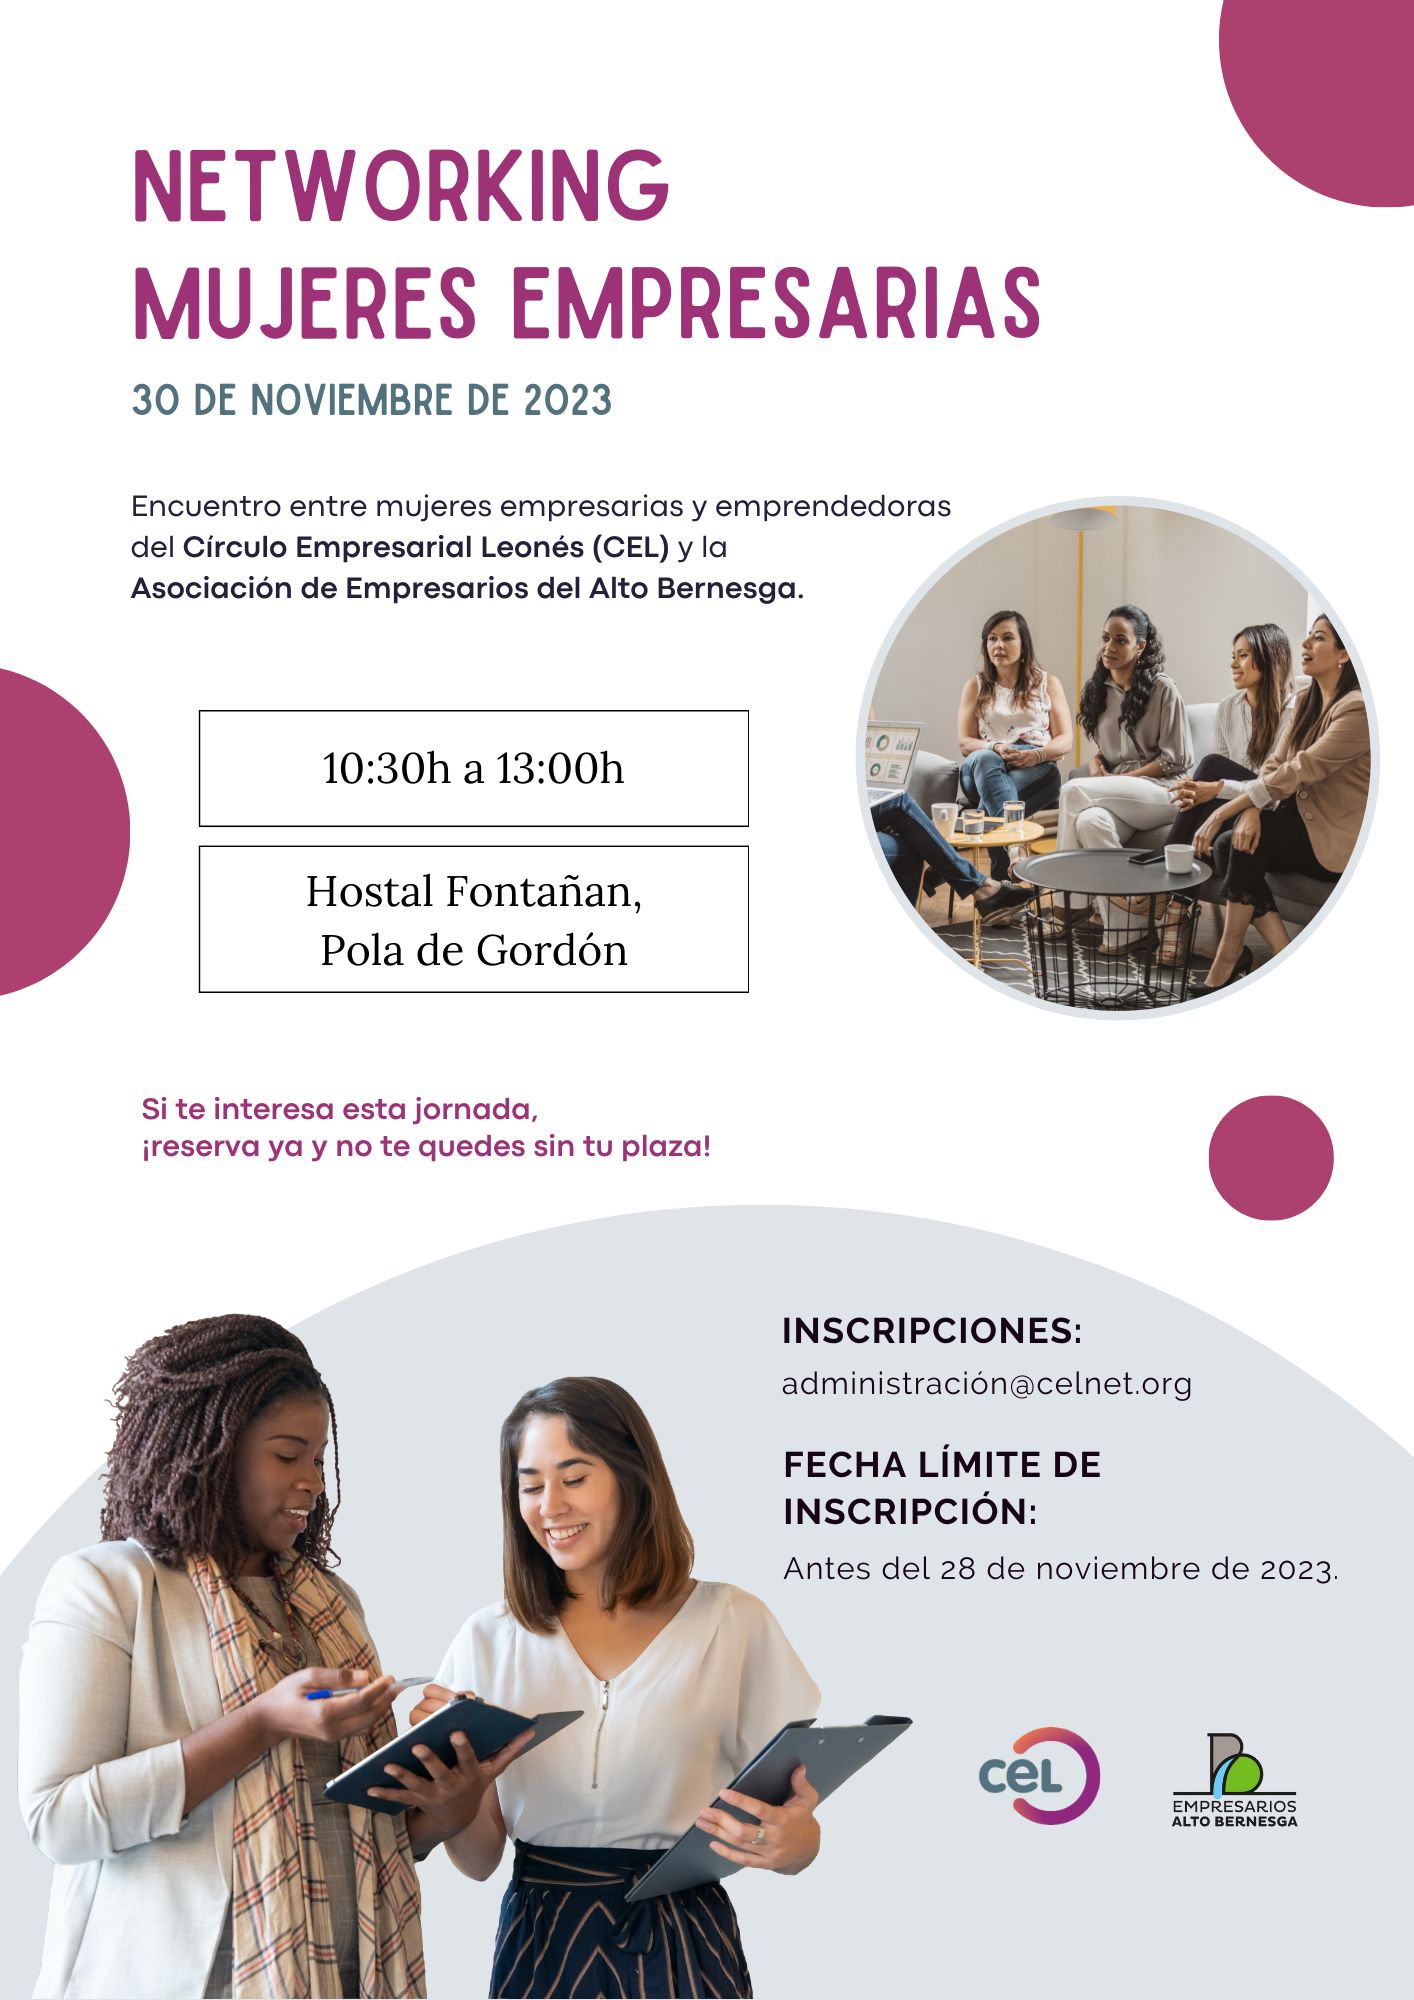 Encuentro Networking Mujeres Empresarias del CEL con la Asociación Empresarios Alto Bernesga